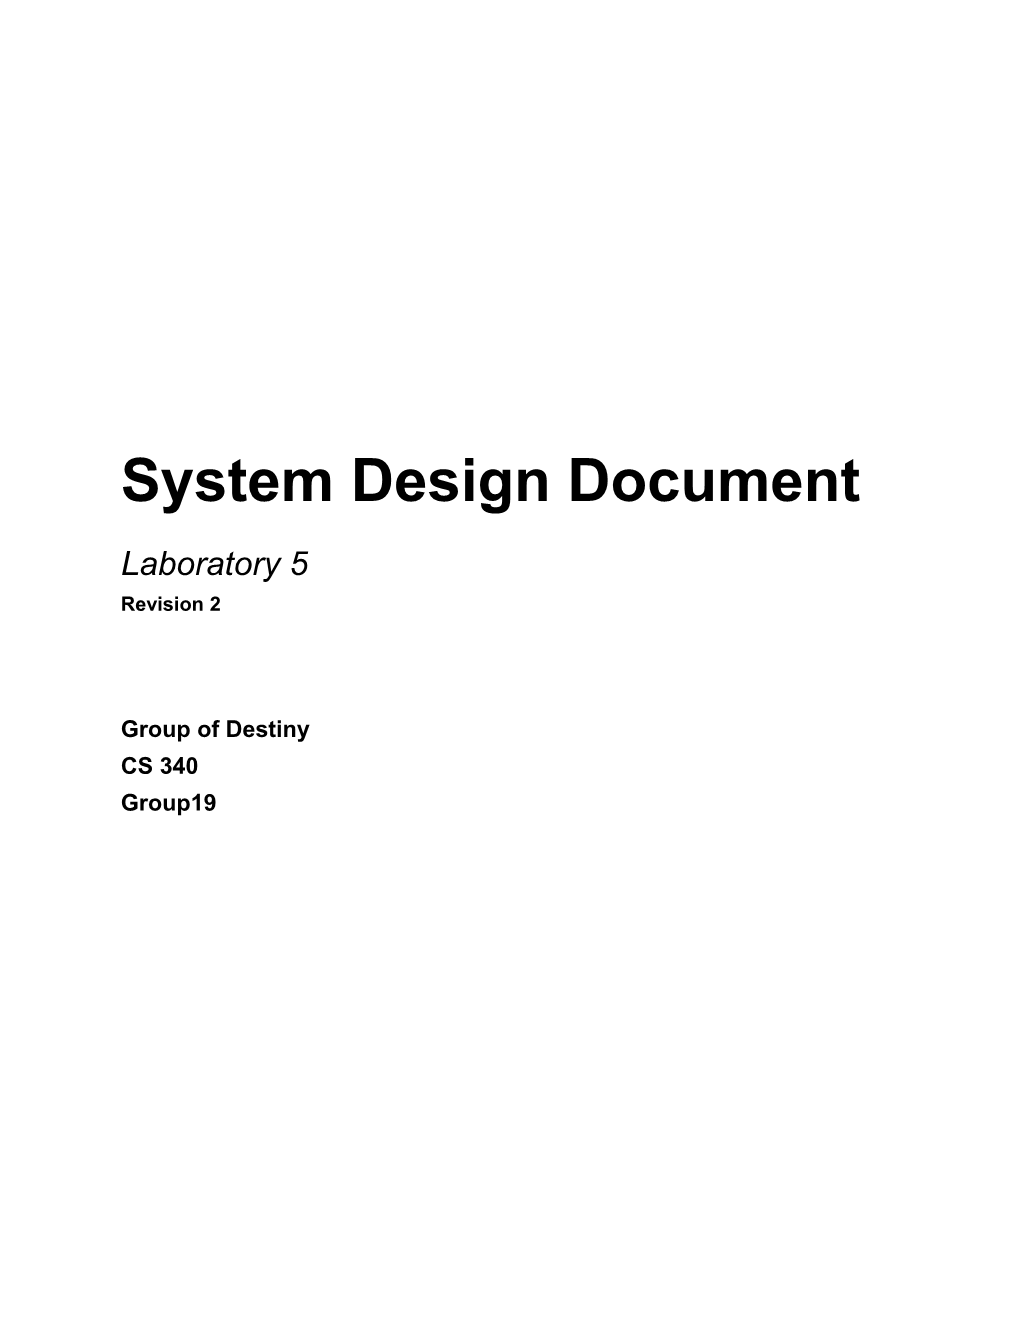 High-Level System Architecture Description